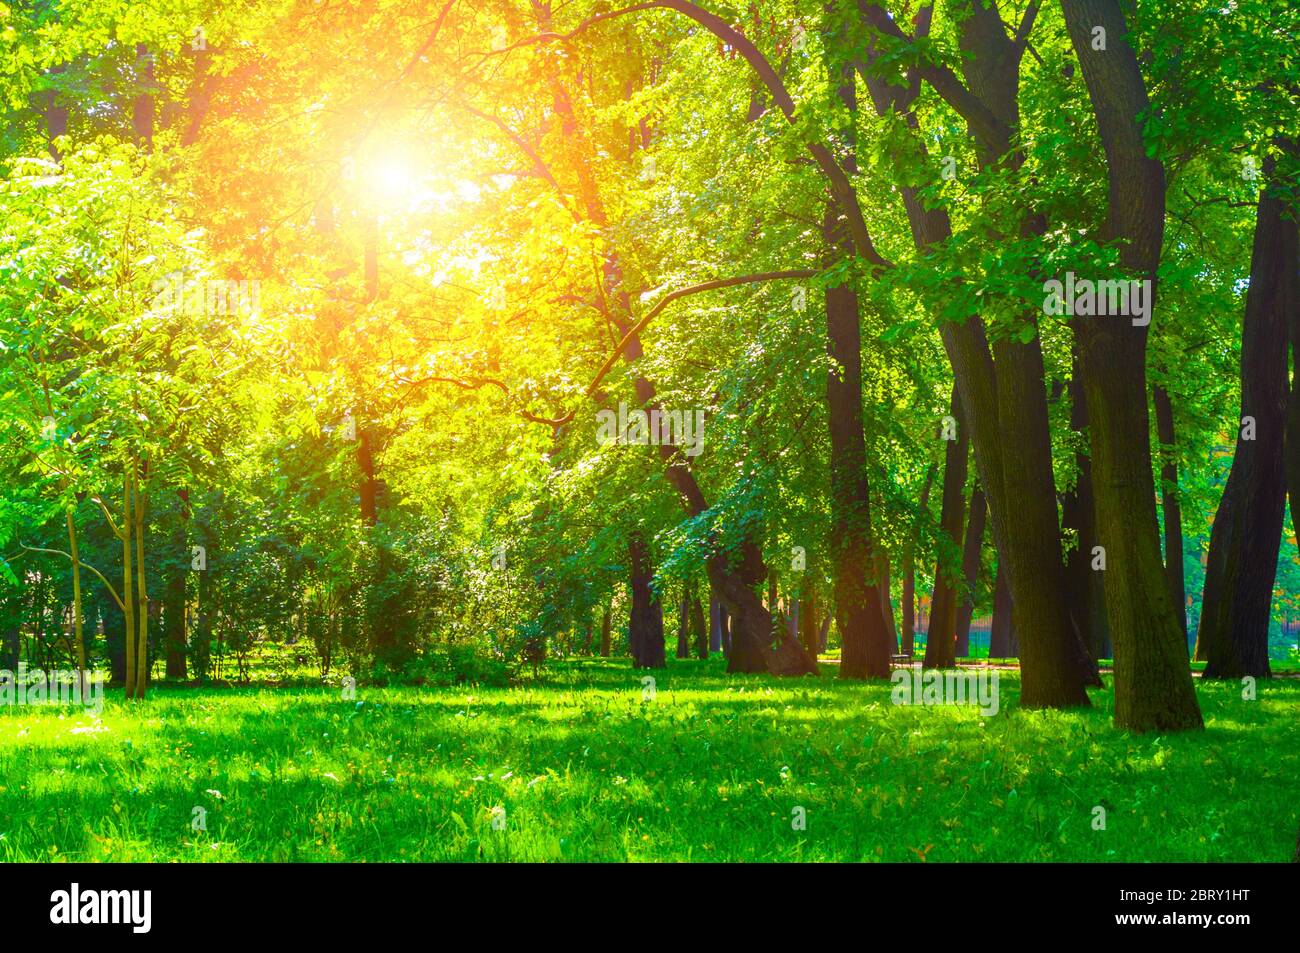 Paisaje soleado en verano. Parque urbano de verano con árboles verdes caducos en clima soleado Foto de stock